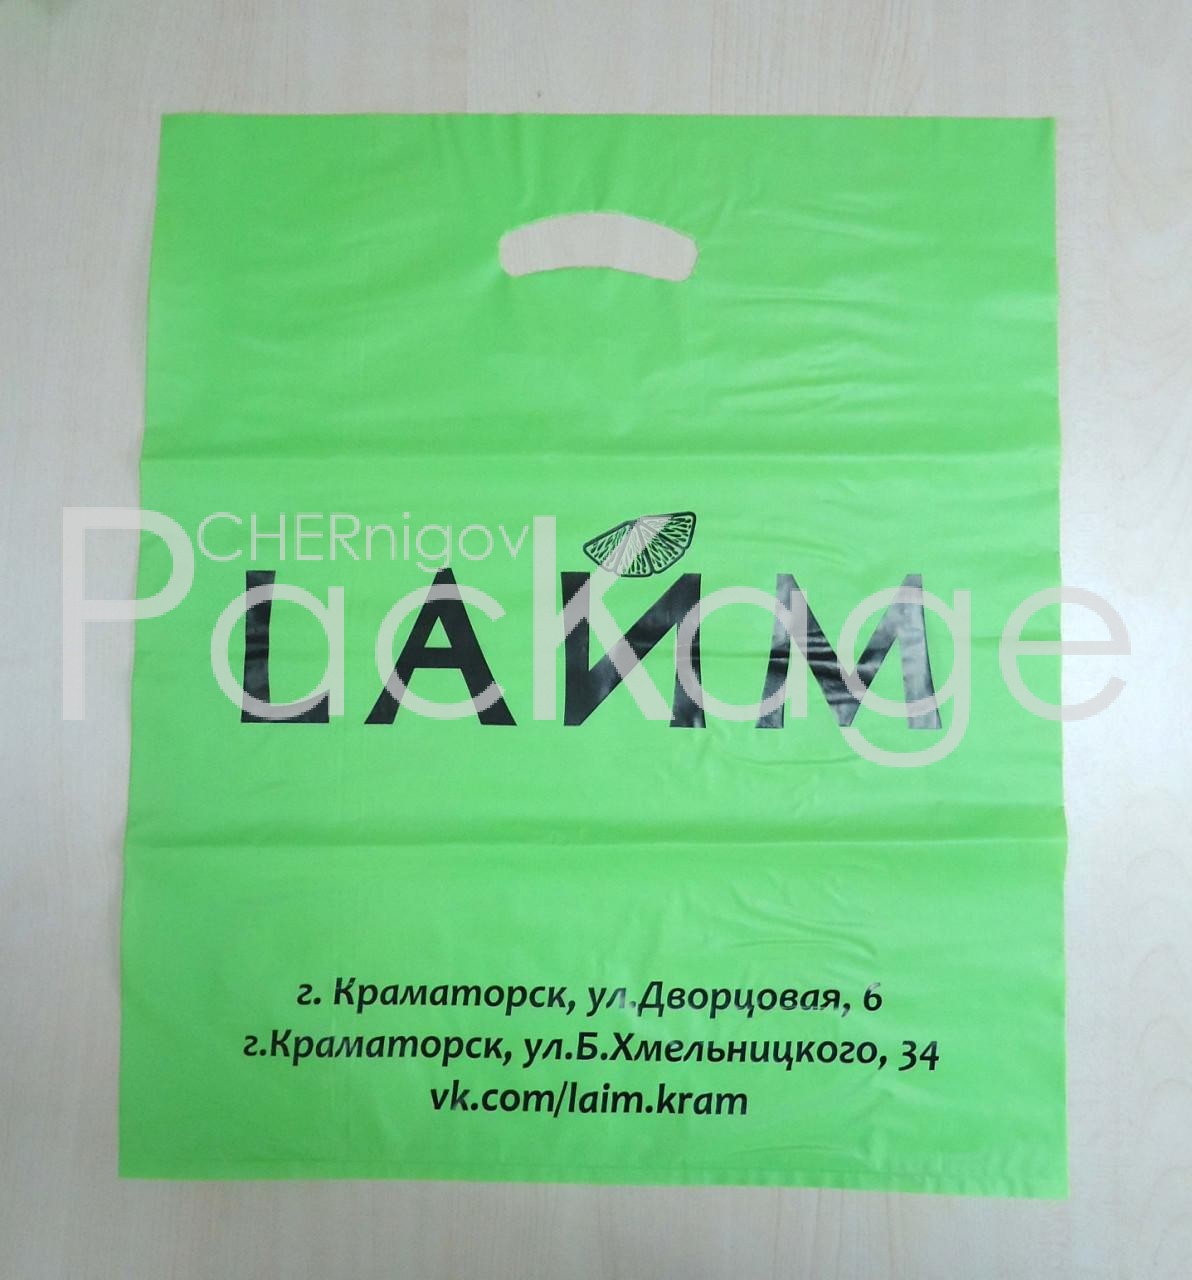 Пакеты банан оптом в Украине Chernigov Package - Photo бнн 40х48_50 мкм